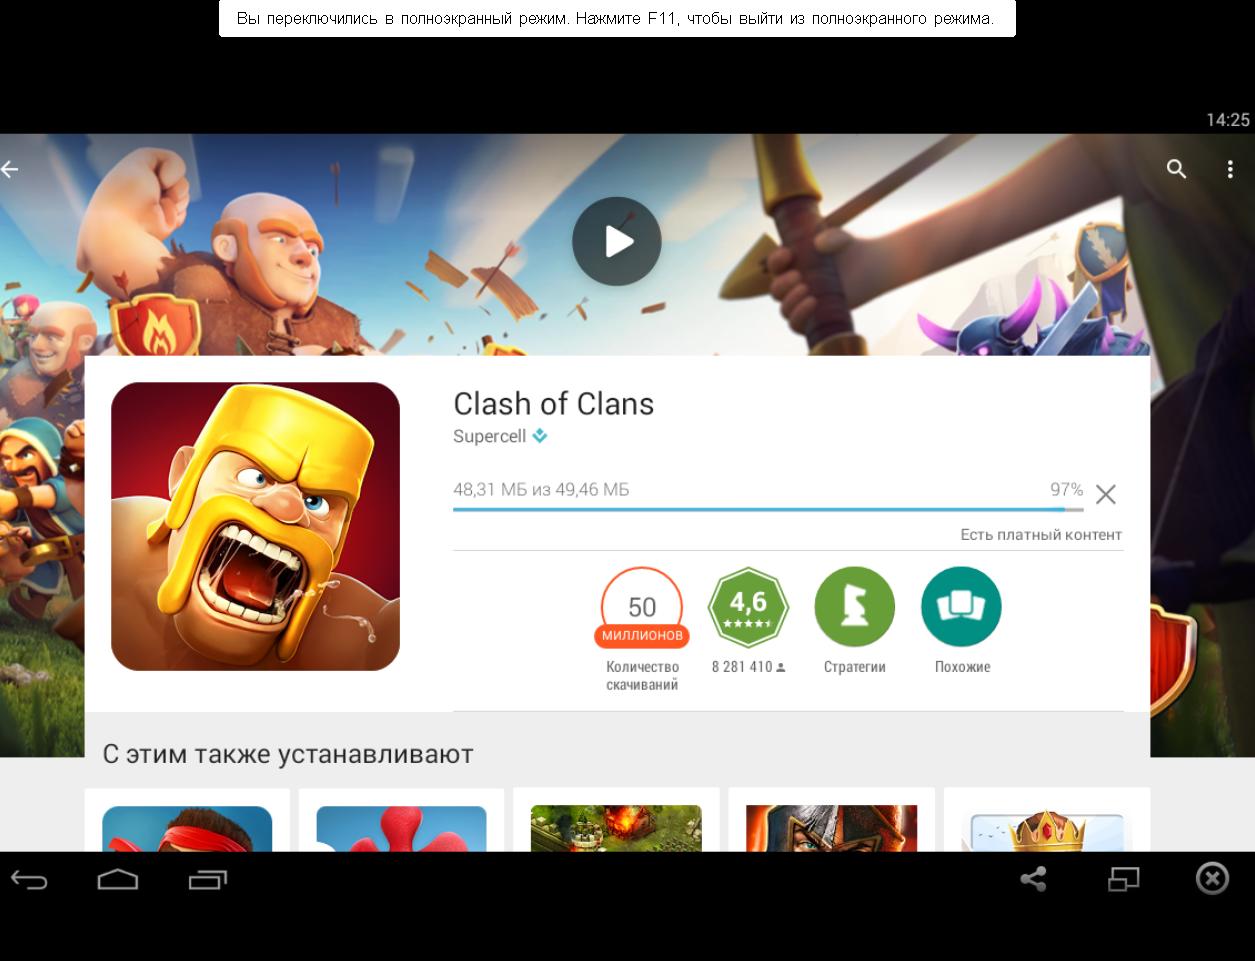 Clash of Clans – скачать игру для iPad, Android, Windows ...